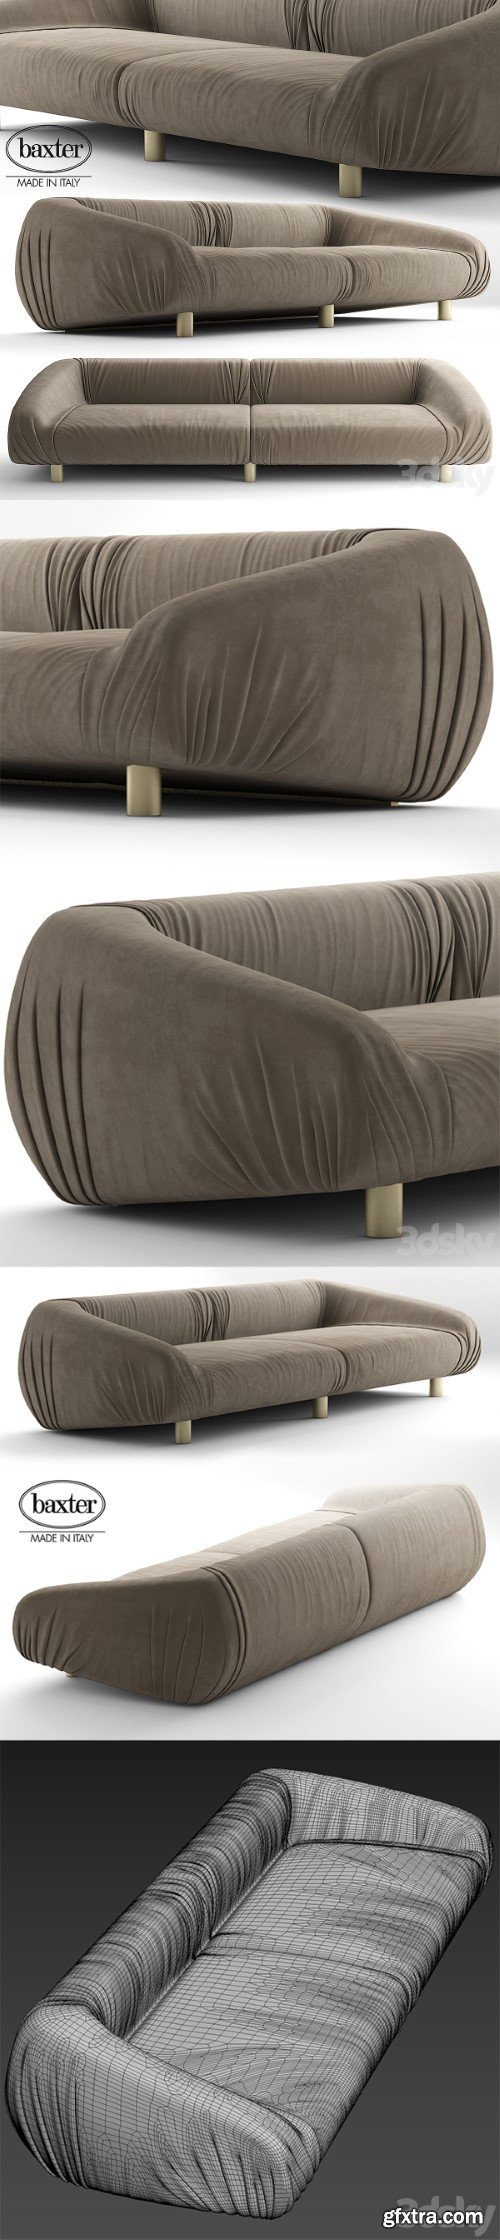 baxter fold sofa